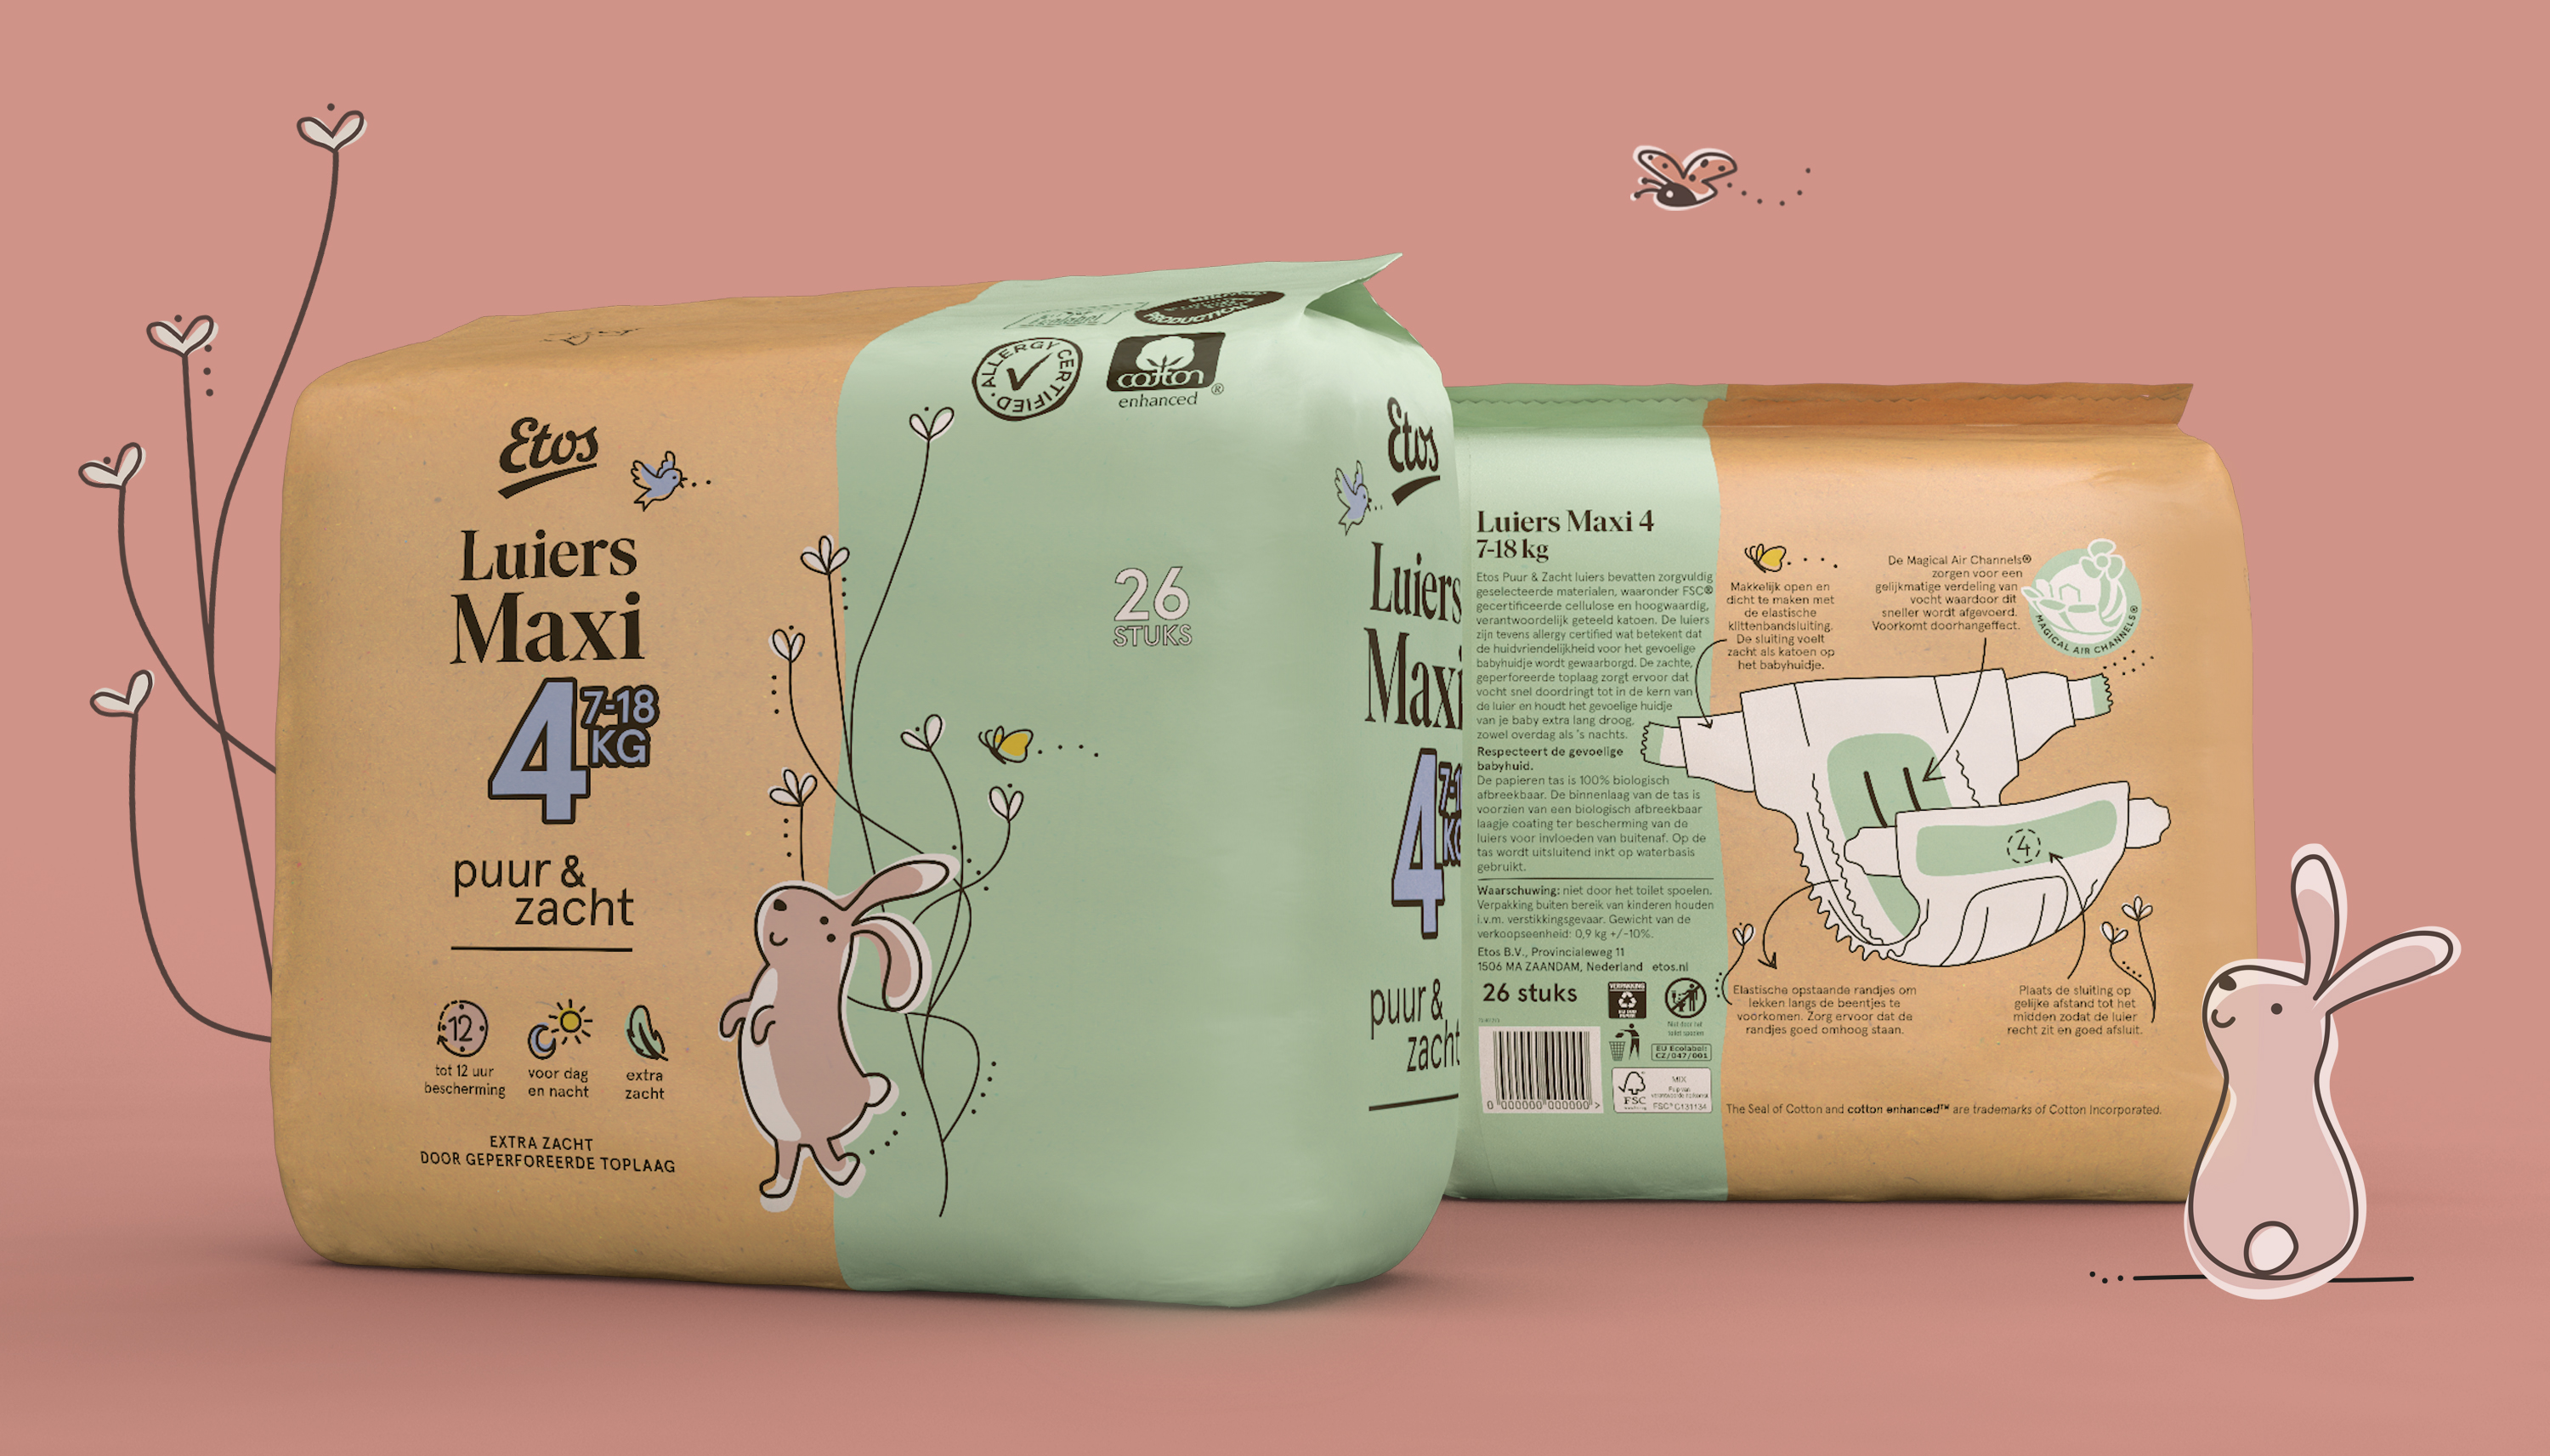 国际包装设计分享|Etos纸尿裤包装设计欣赏